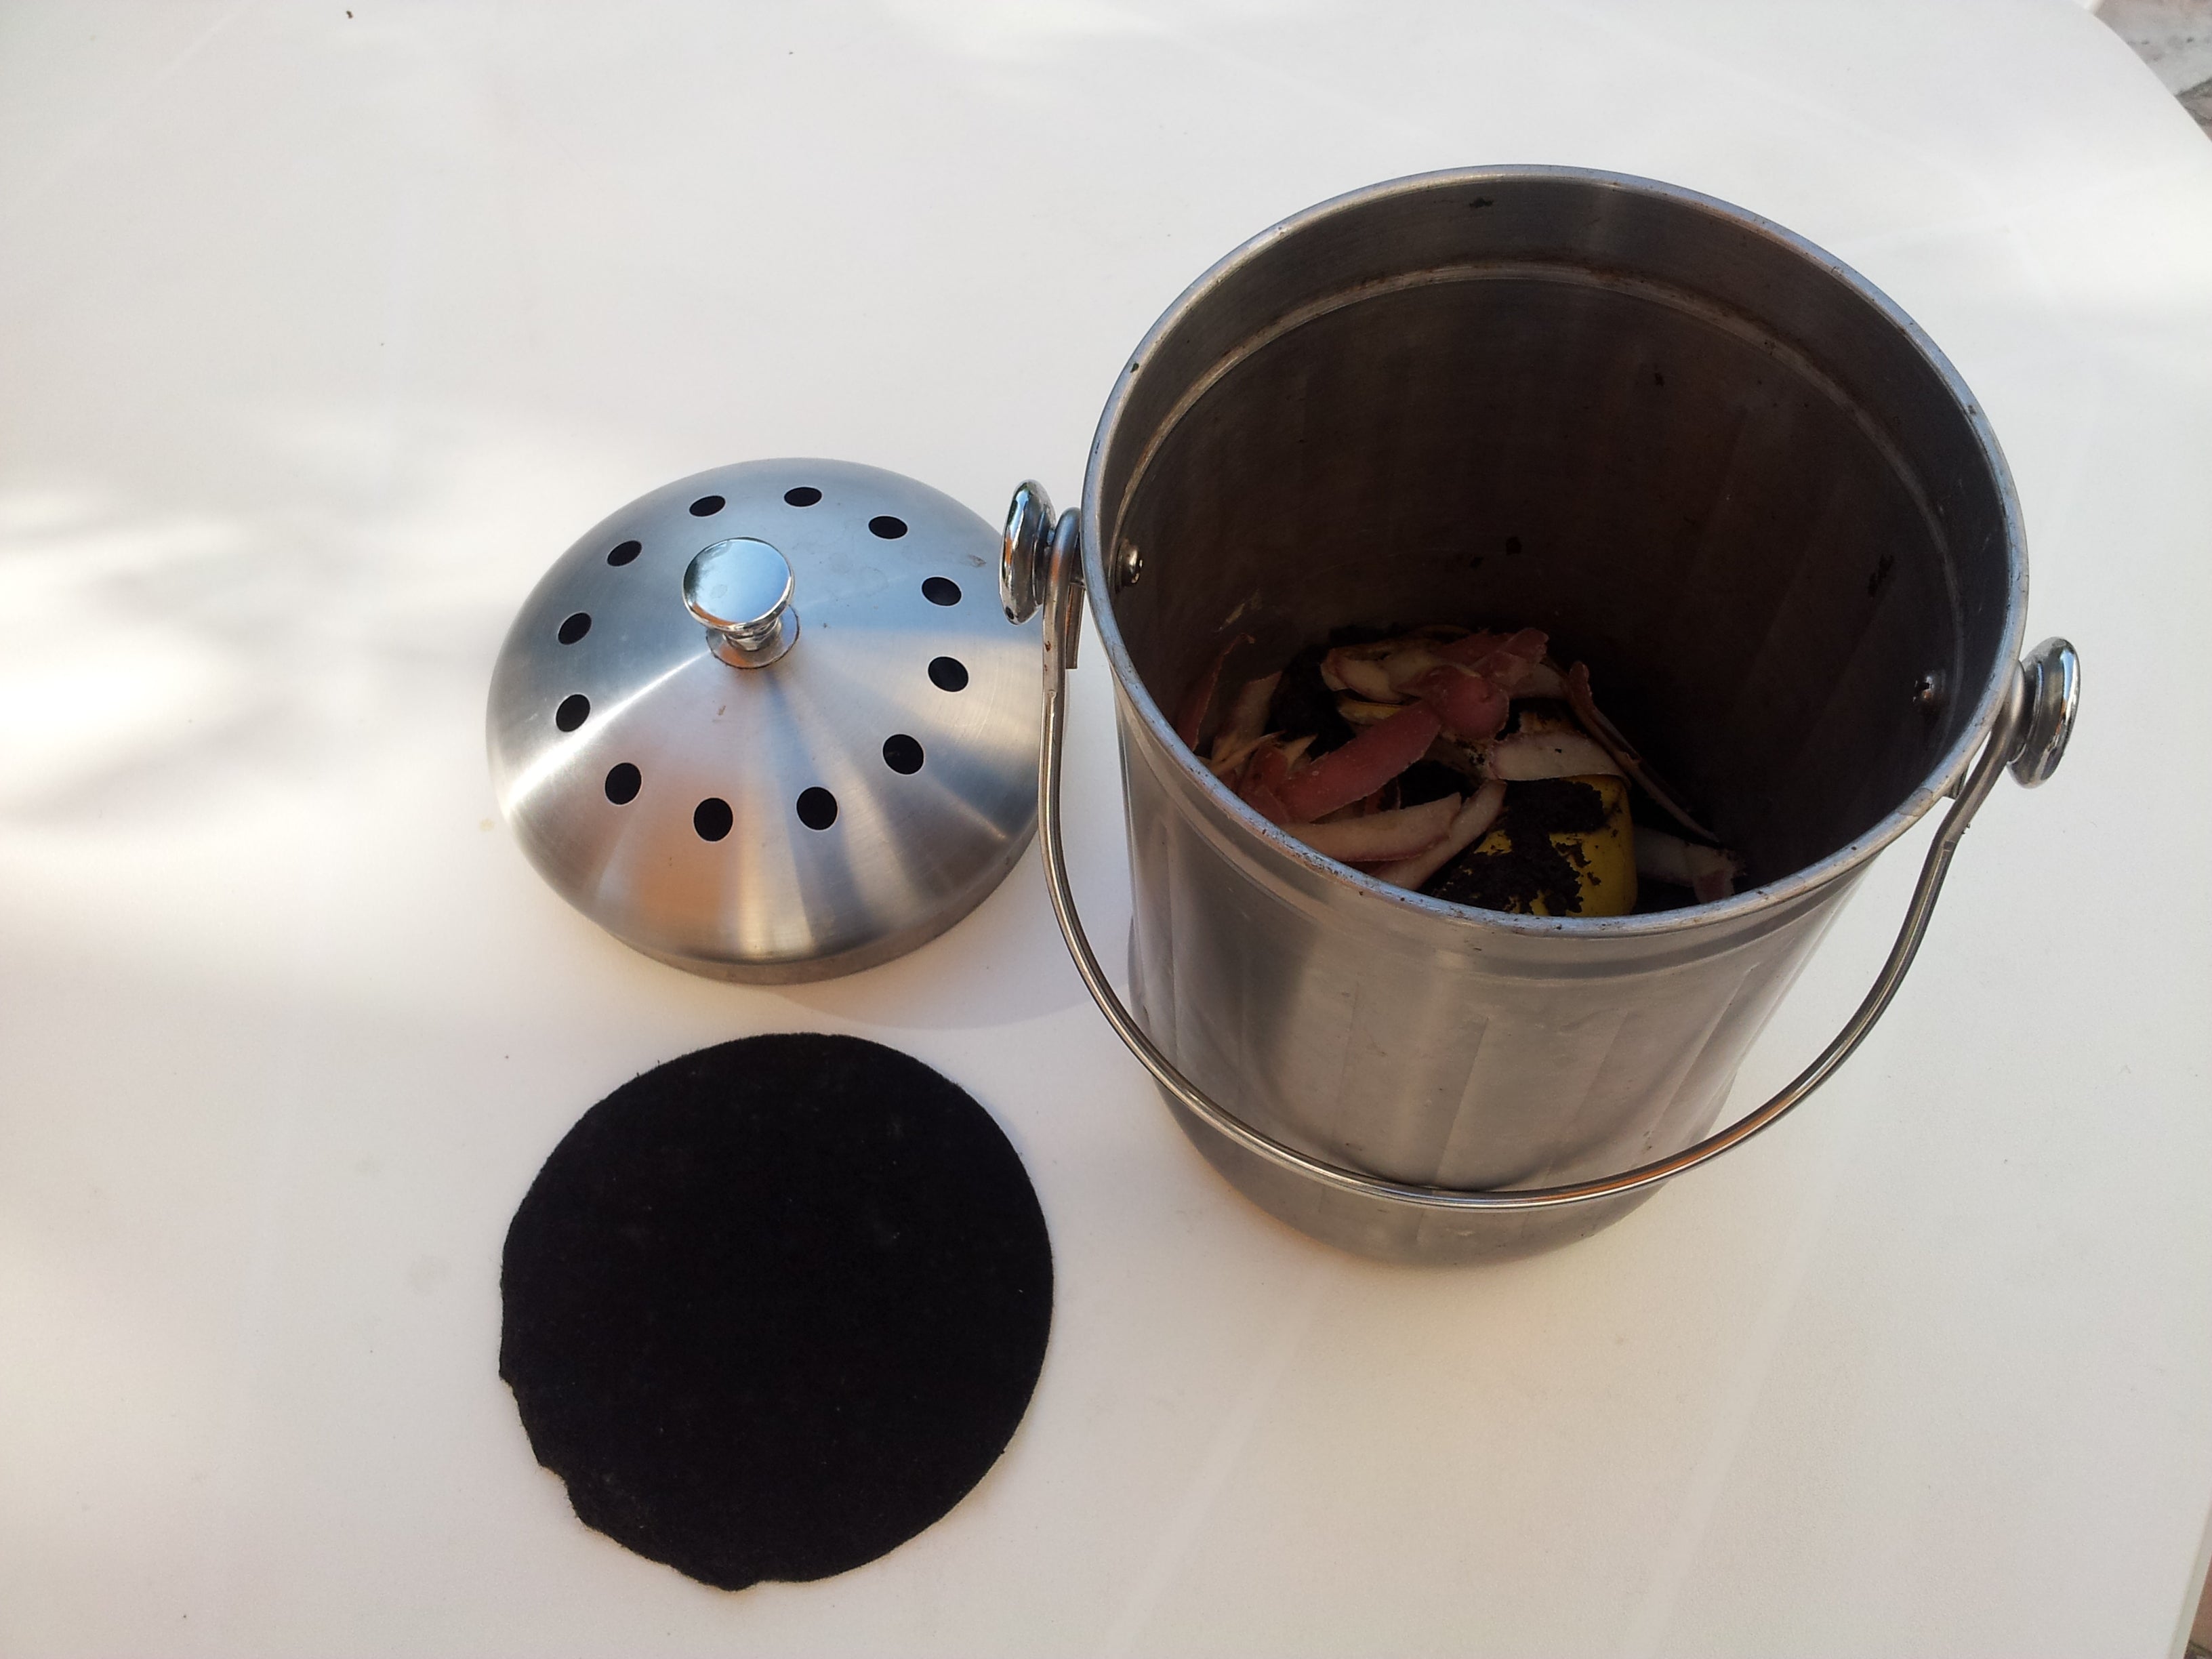 Bac à compost en acier inoxydable Bac à compost de cuisine avec filtre à  charbon